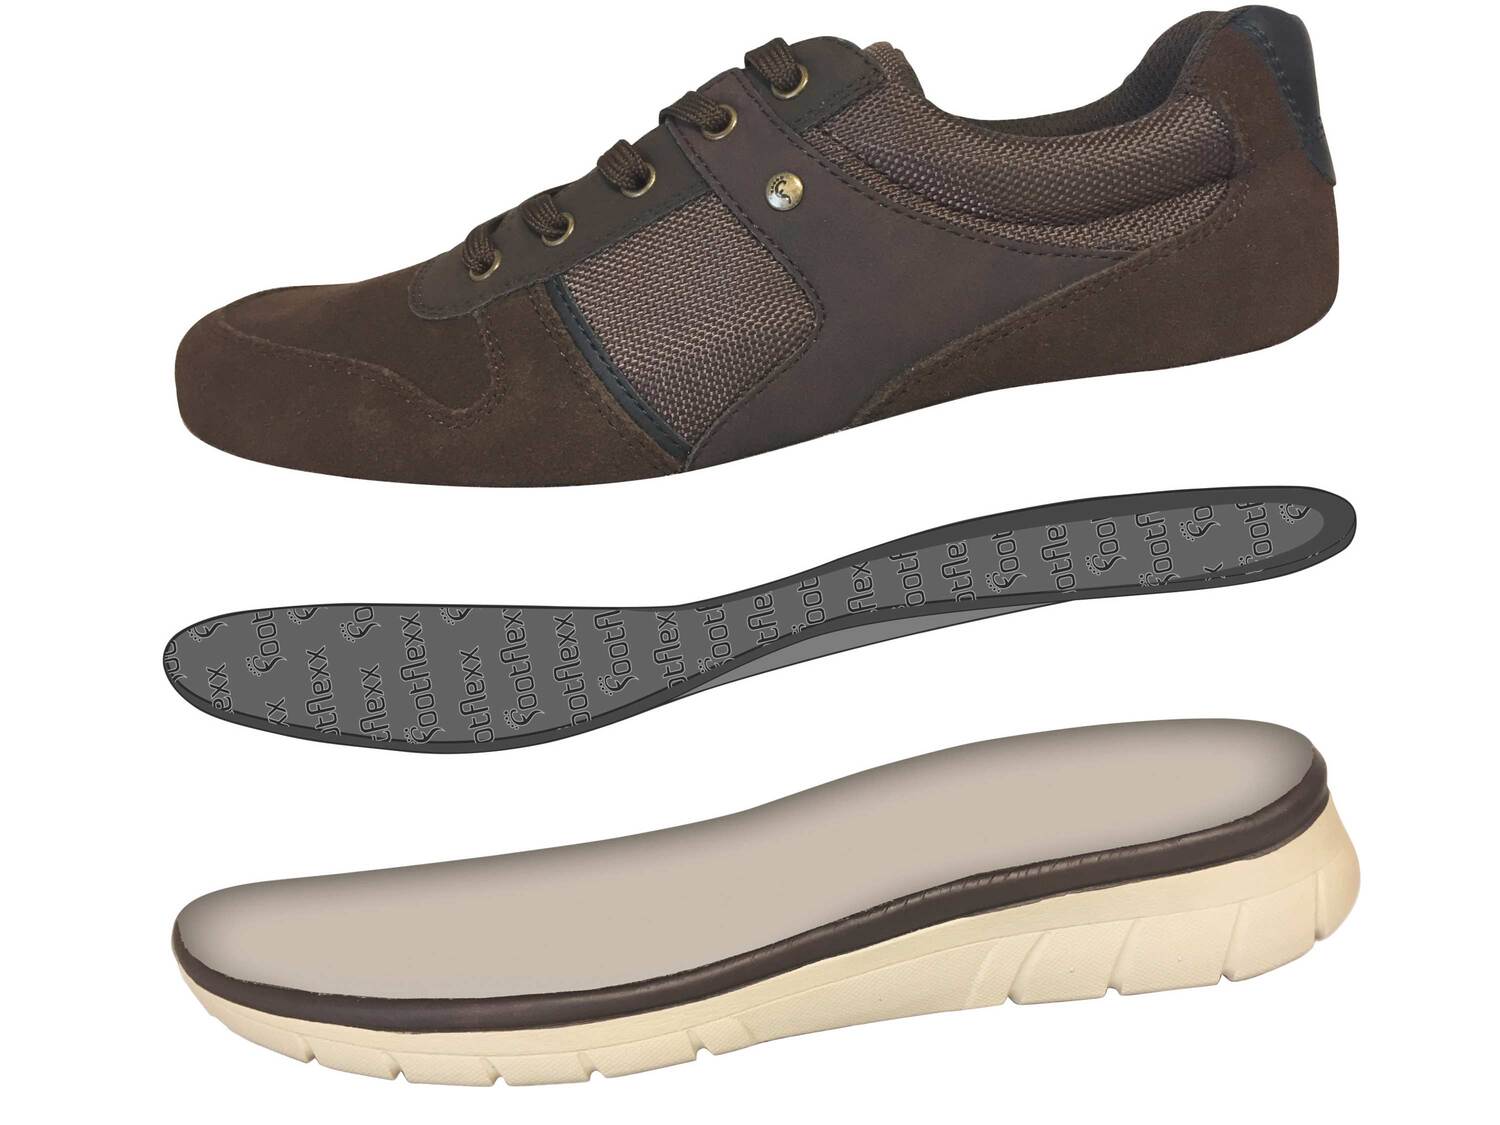 Skórzane buty męskie , cena 69,90 PLN 
- rozmiary: 41-46
- sk&oacute;ra naturalna
DLACZEGO ...